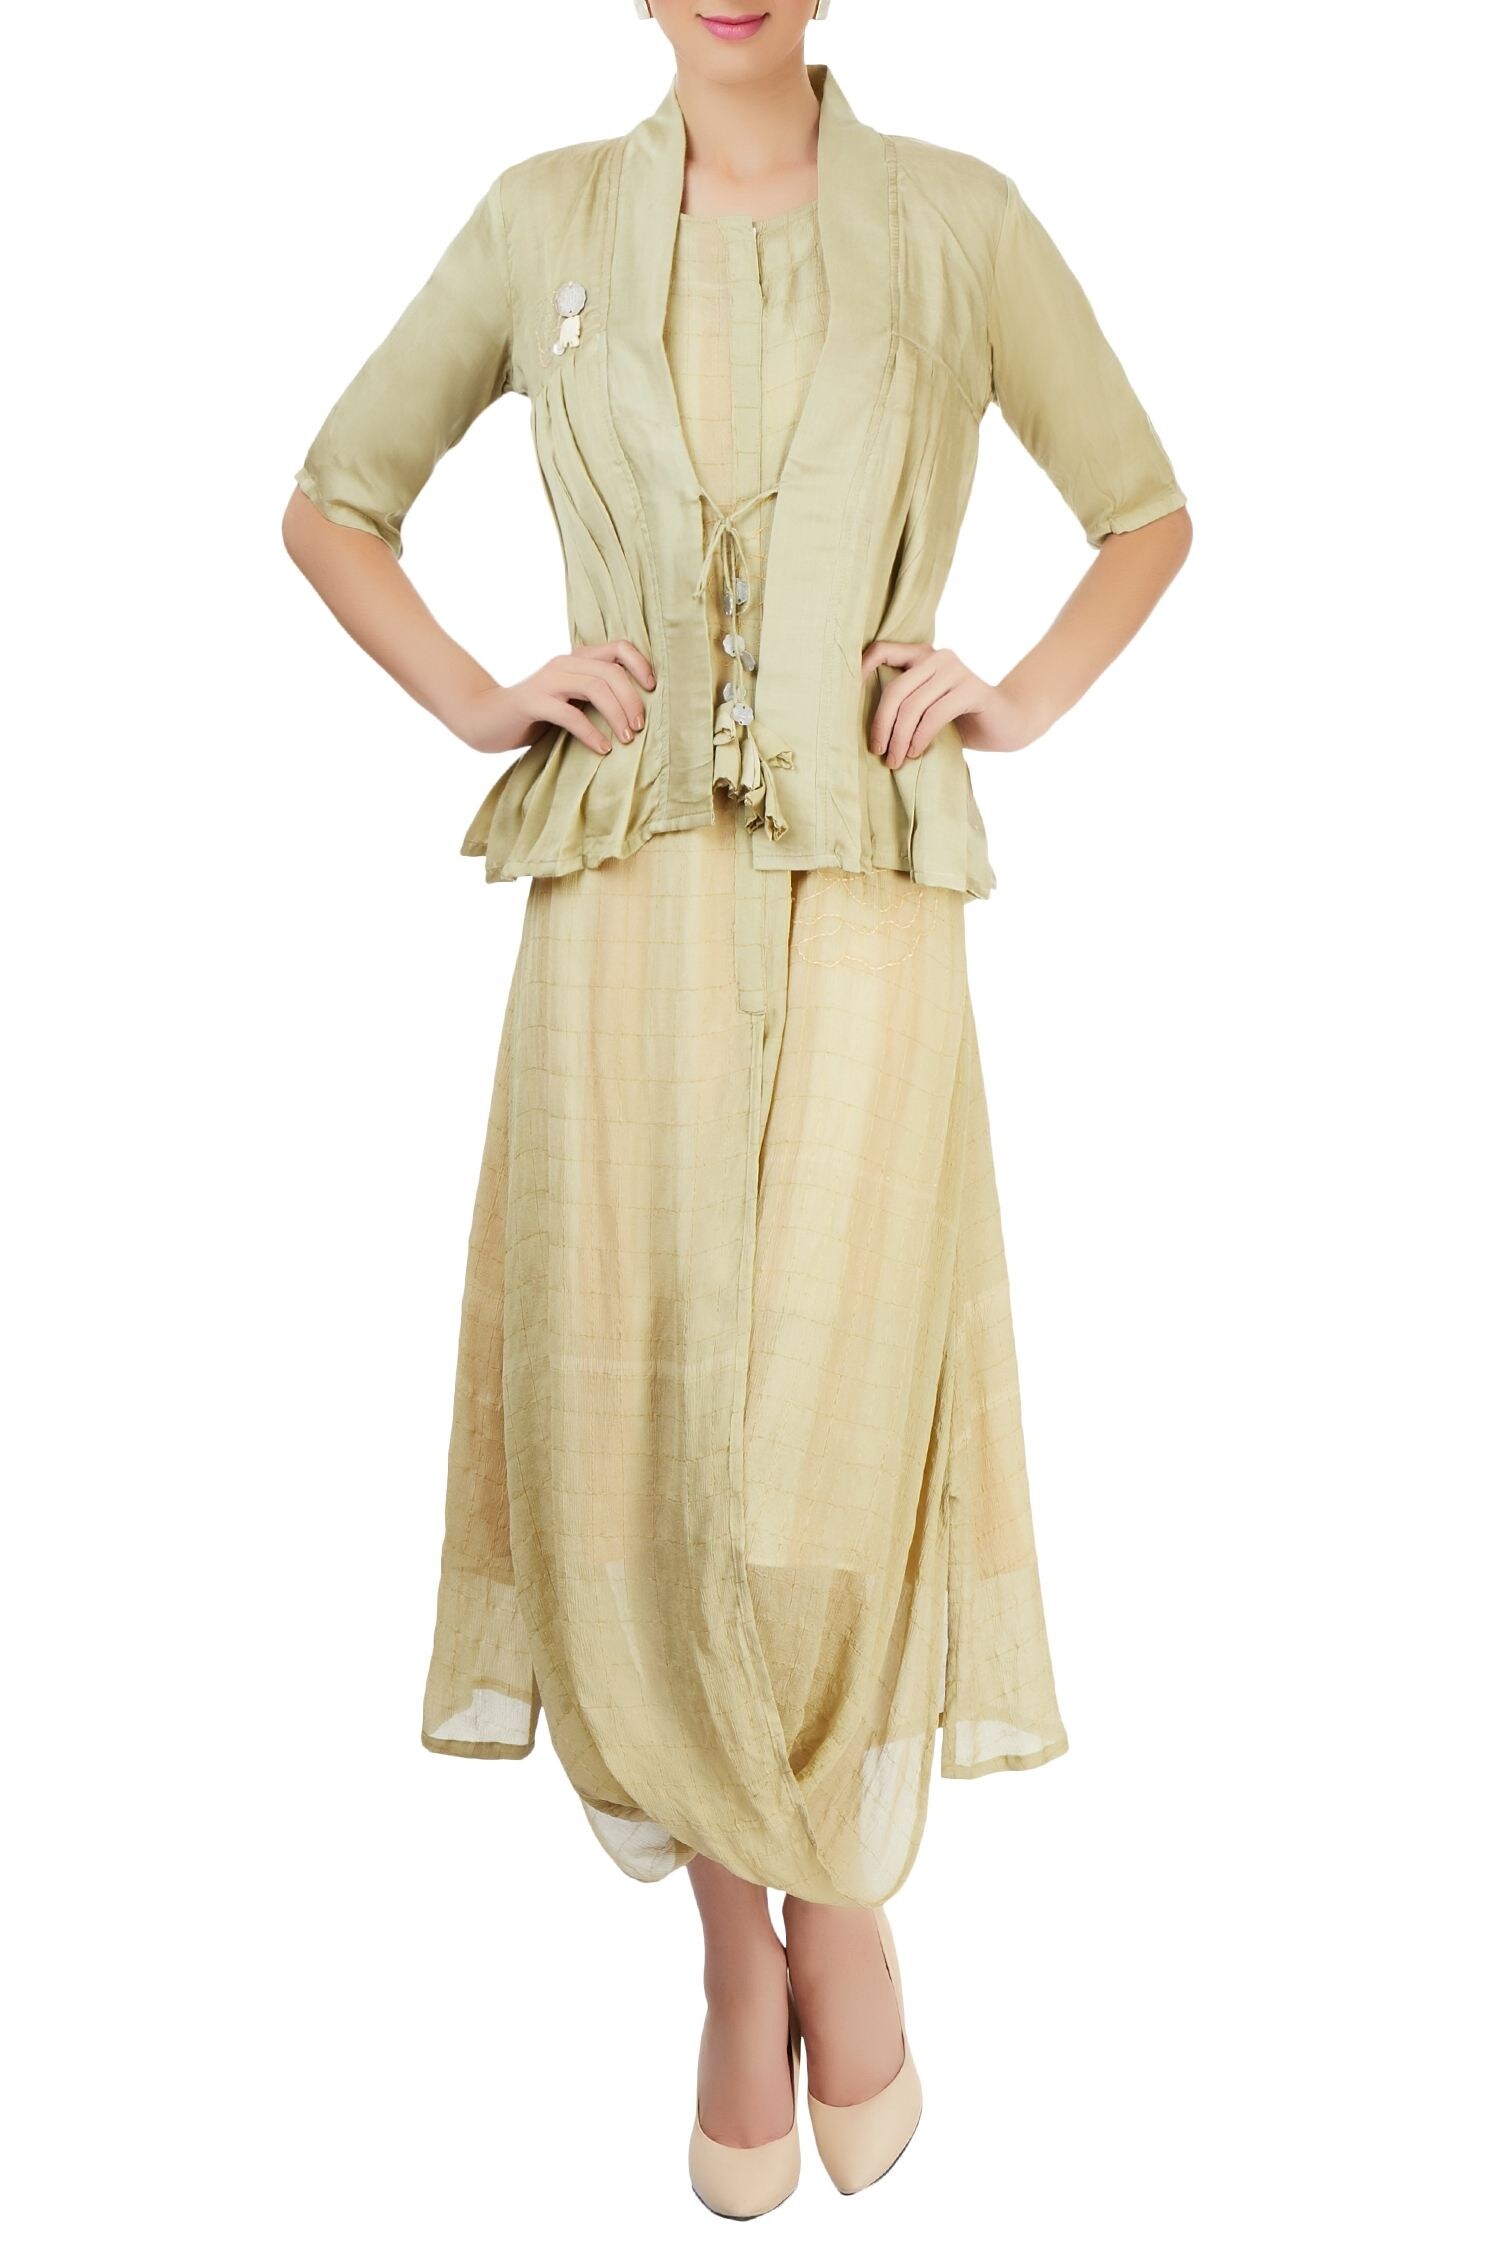 Buy Olive green dress with kediyu jacket by Itara at Aza Fashions